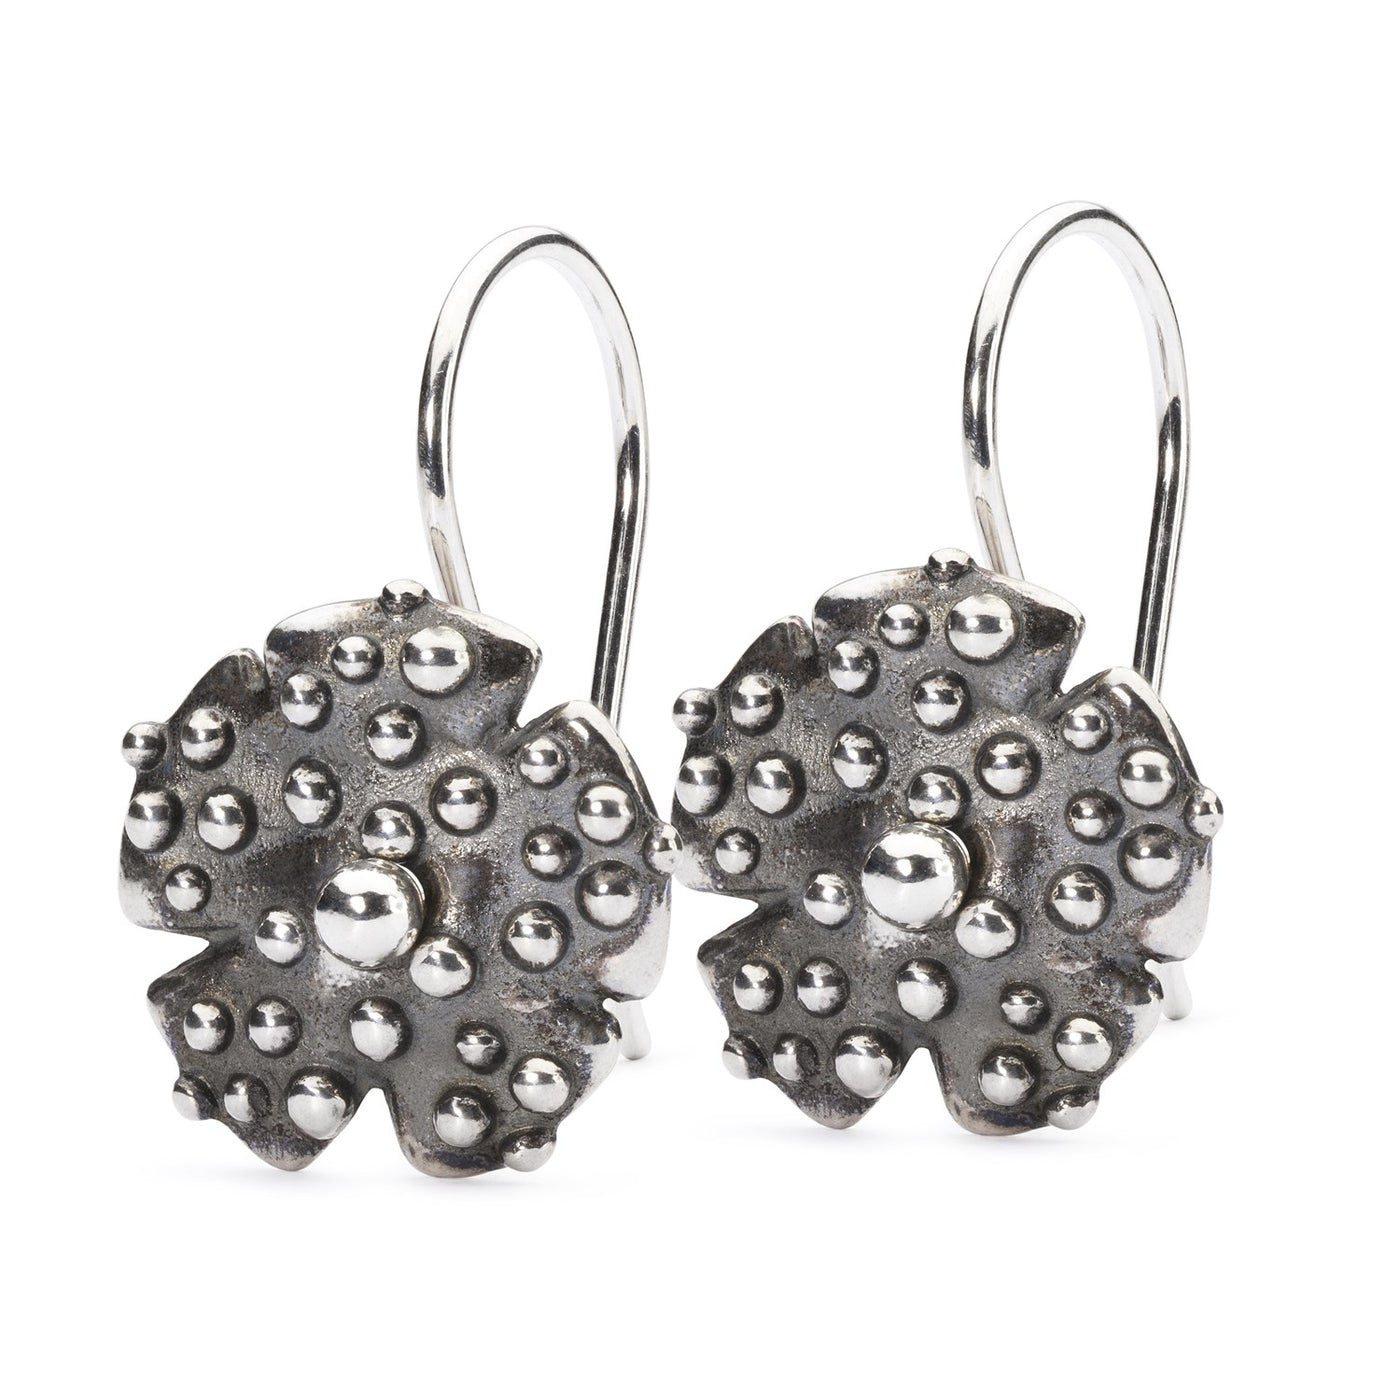 Morning Dew Gold Earrings with Silver Earring Hooks – Trollbeads A/S